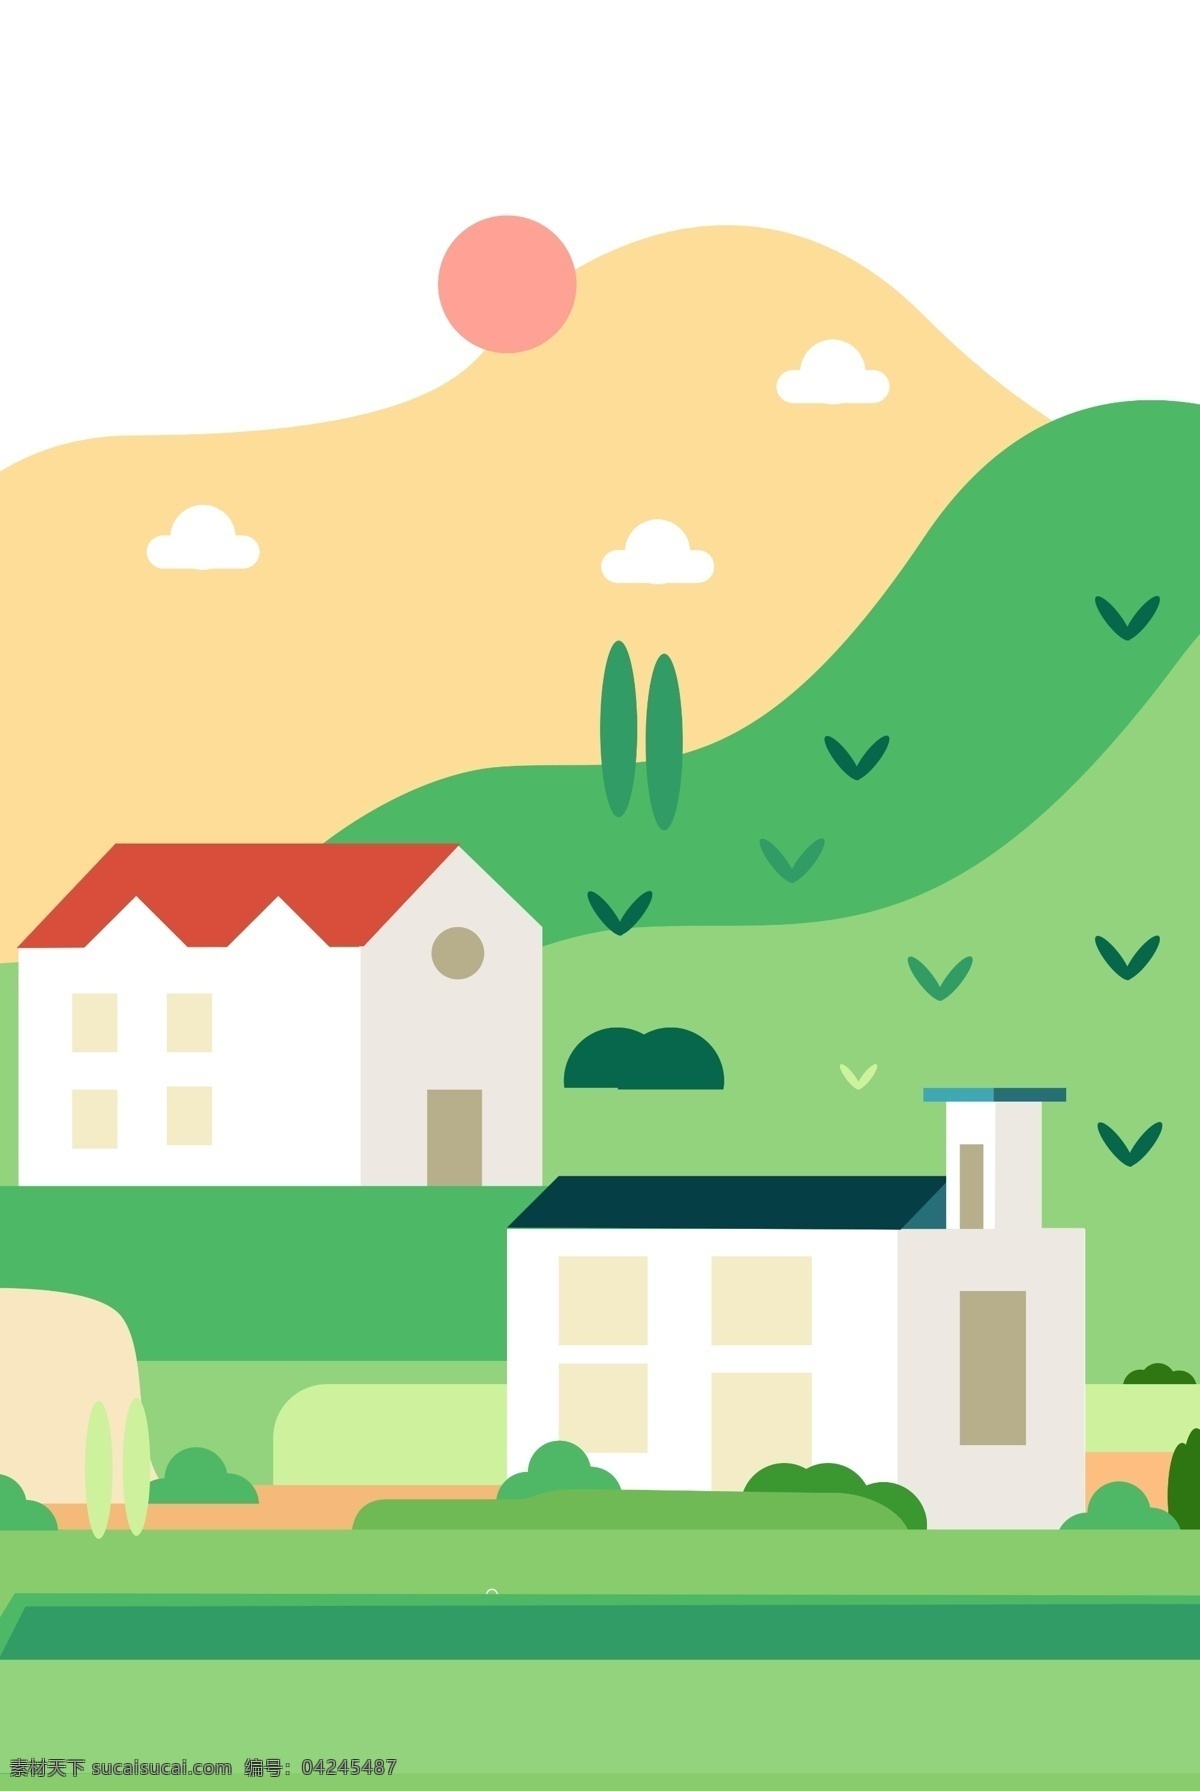 手绘 乡村 插画 海报 背景 生活 房子 房屋 建筑 山坡 草地 草坪 绿色 小草 太阳 白云 云朵